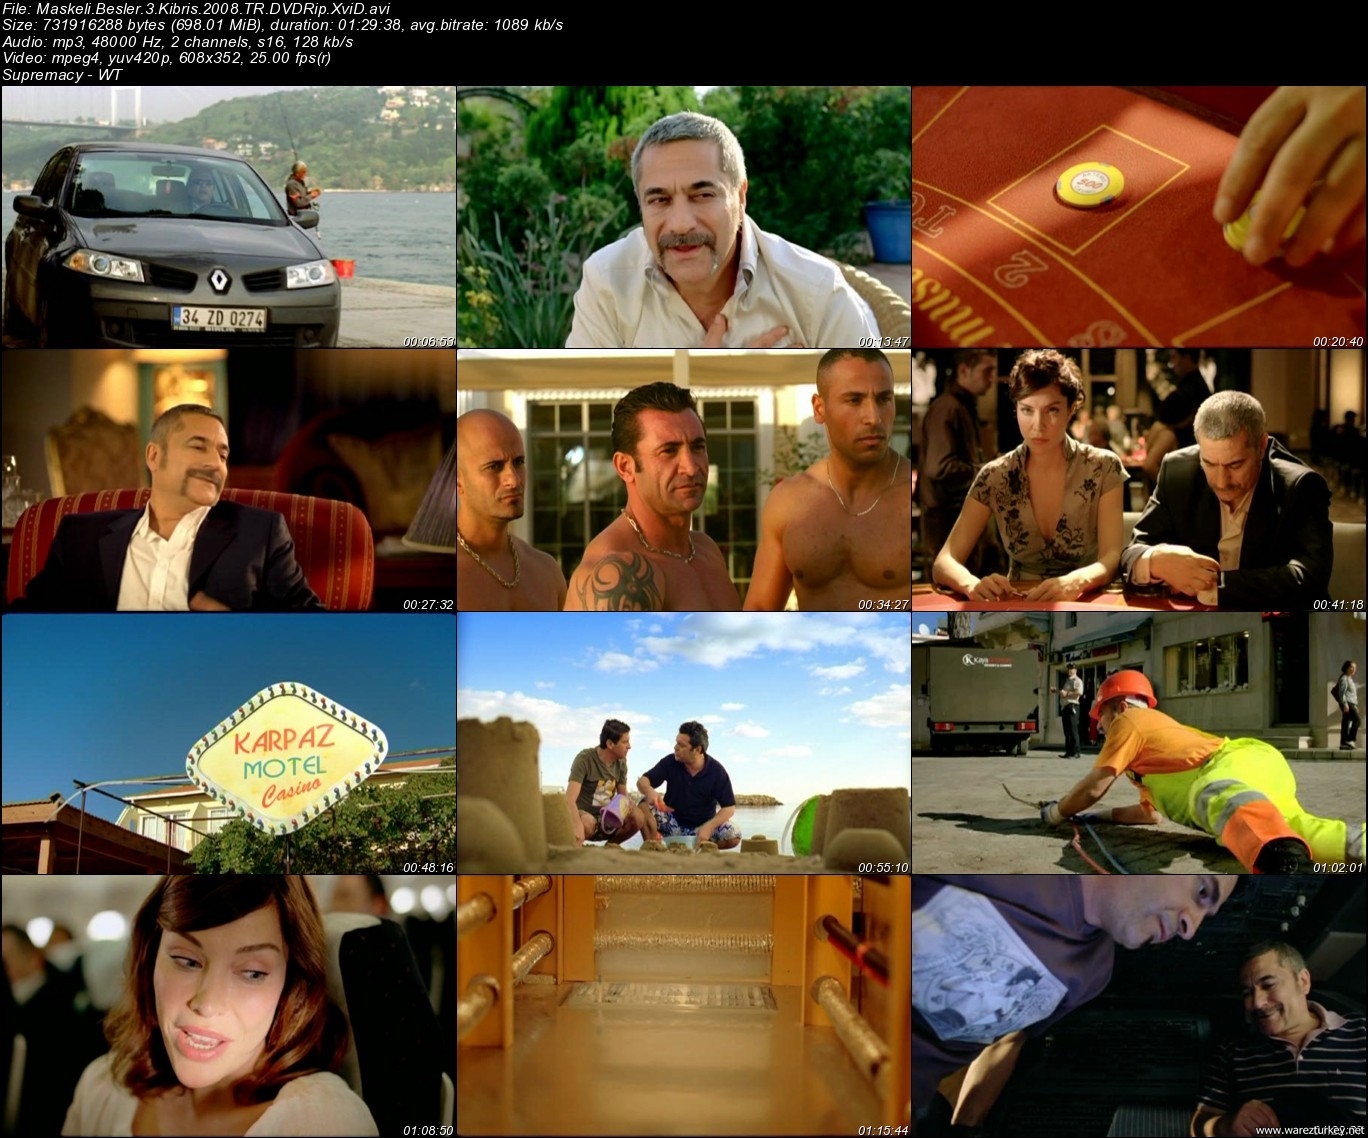 Maskeli Beşler Kıbrıs - 2008 DVDRip Tek Link indir » WarezTurkey | Program  indir - Film İndir - Oyun indir